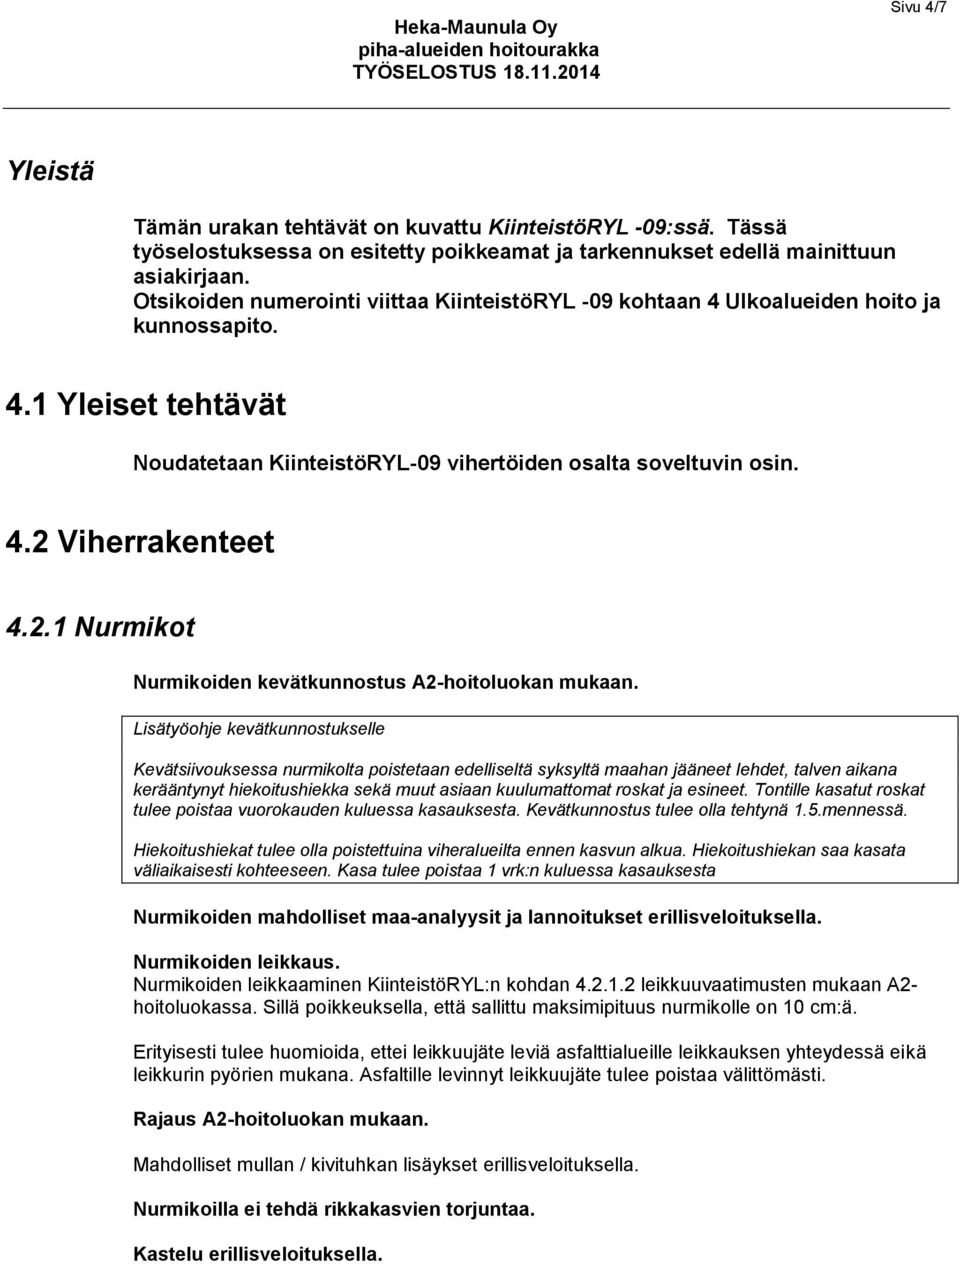 2.1 Nurmikot Nurmikoiden kevätkunnostus A2-hoitoluokan mukaan.